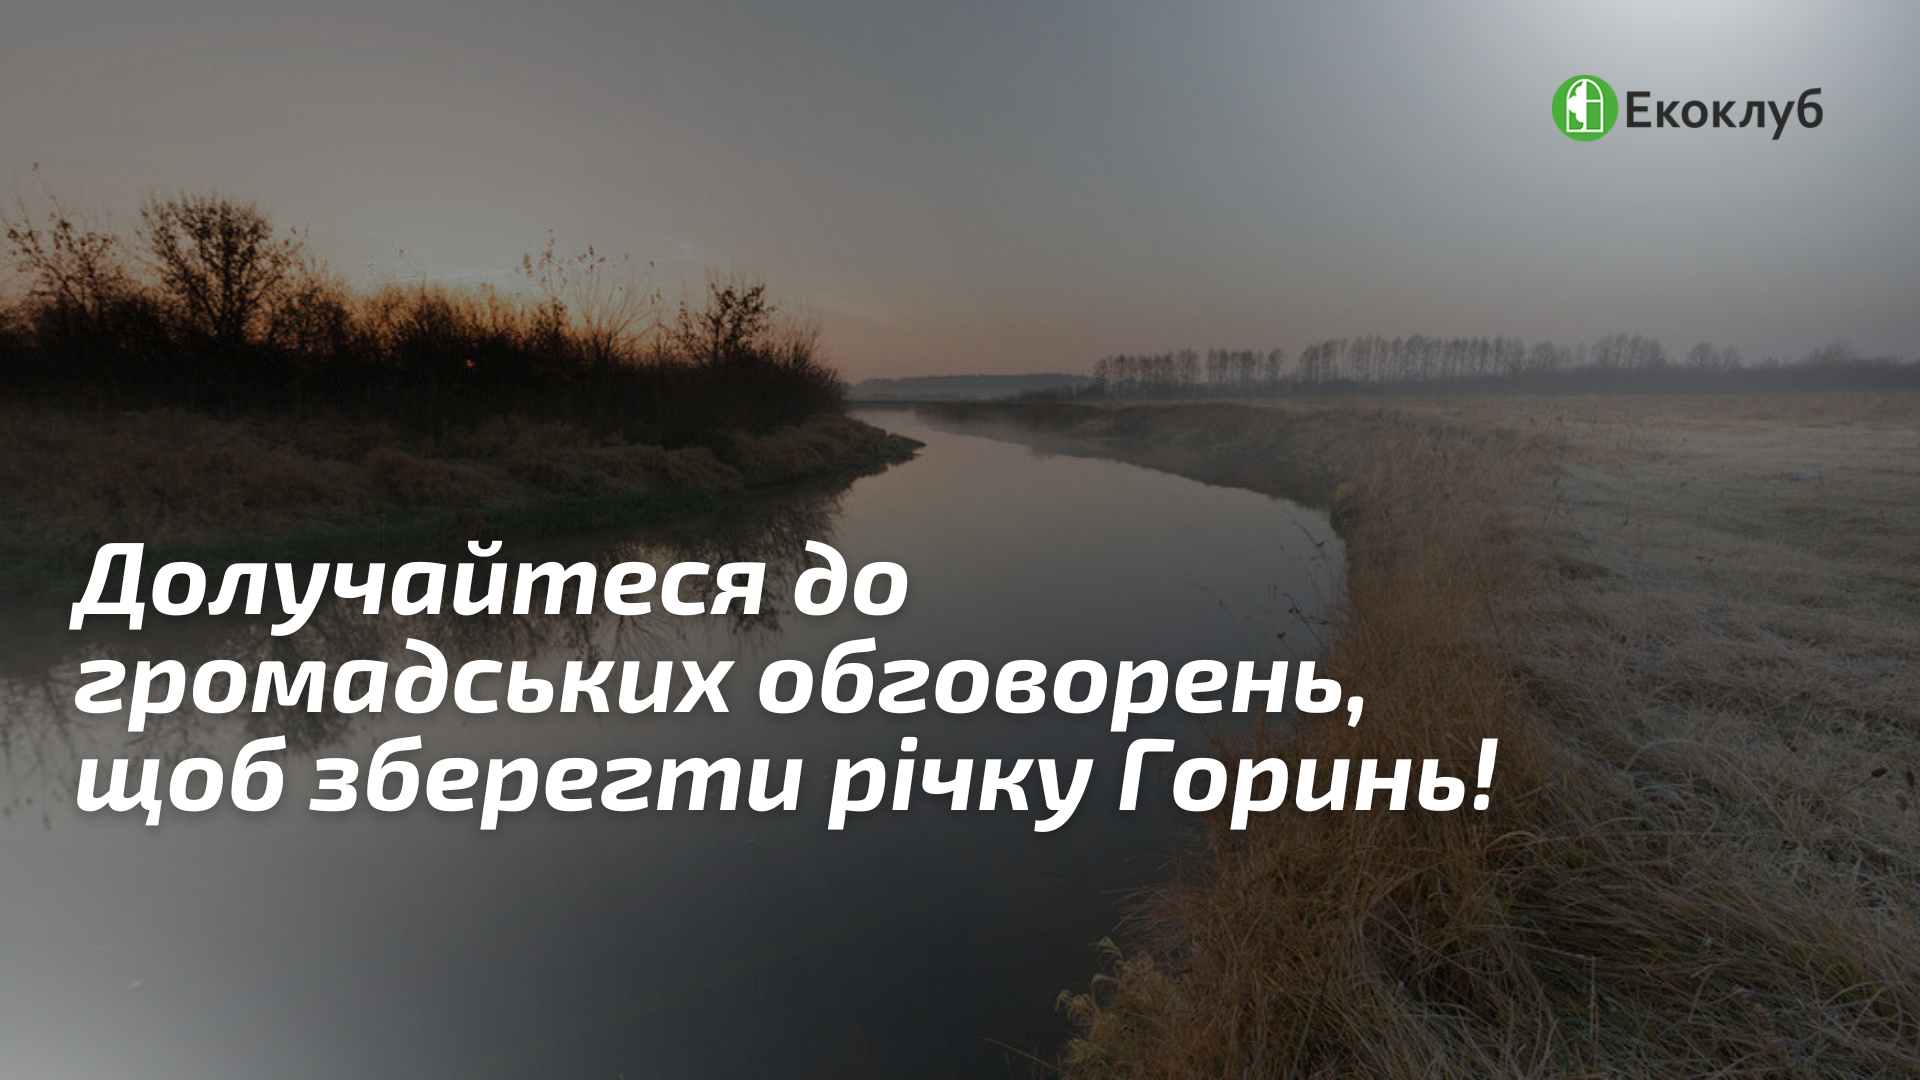 Долучайтеся до громадських обговорень, щоб зберегти річку Горинь від можливого забруднення та осушення